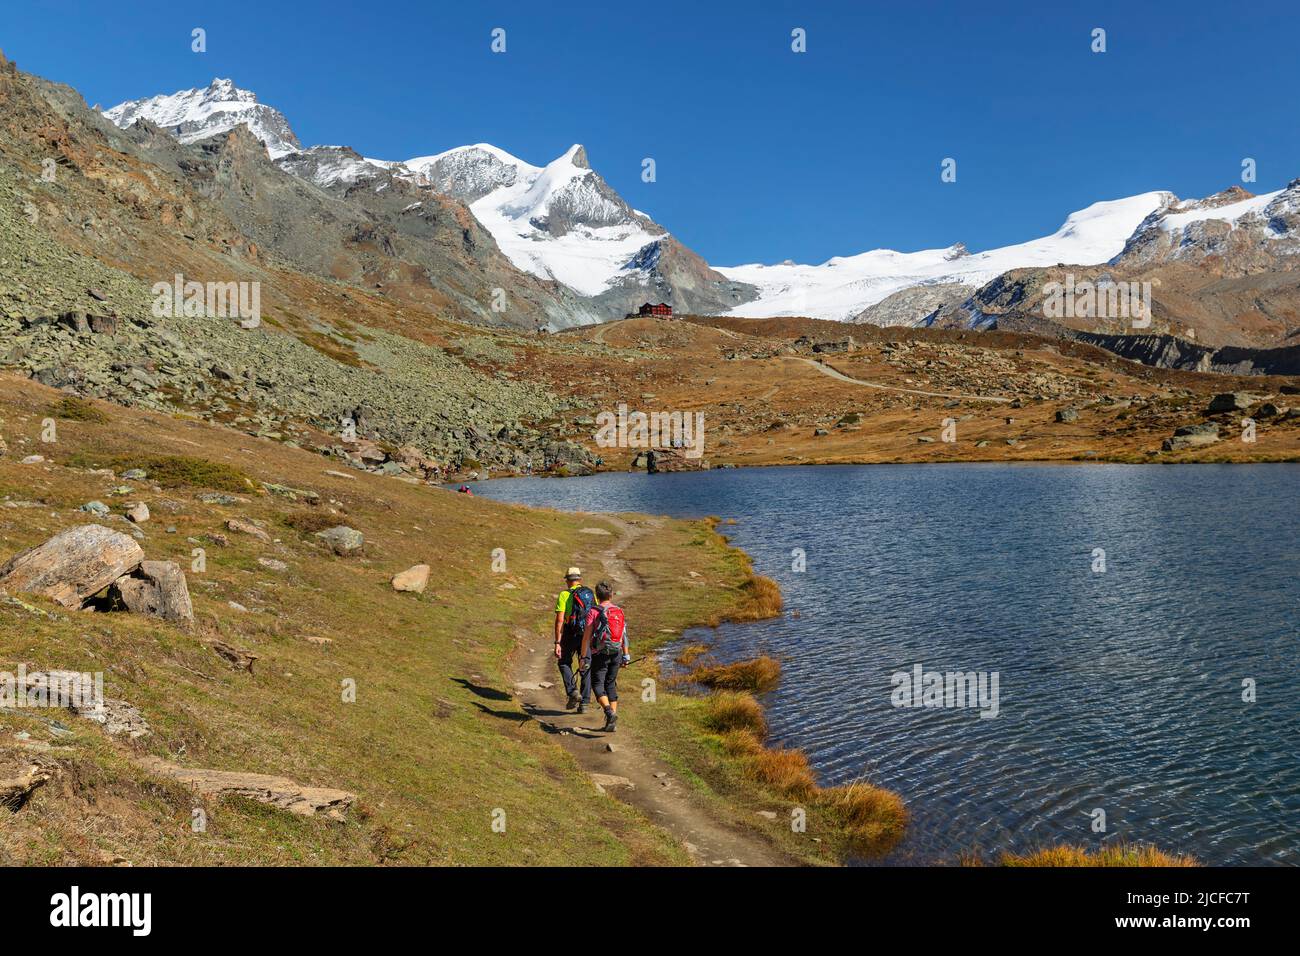 Hiker at Stellisee on the way to Berghaus Fluhalp, Zermatt, Alps, Valais, Switzerland Stock Photo